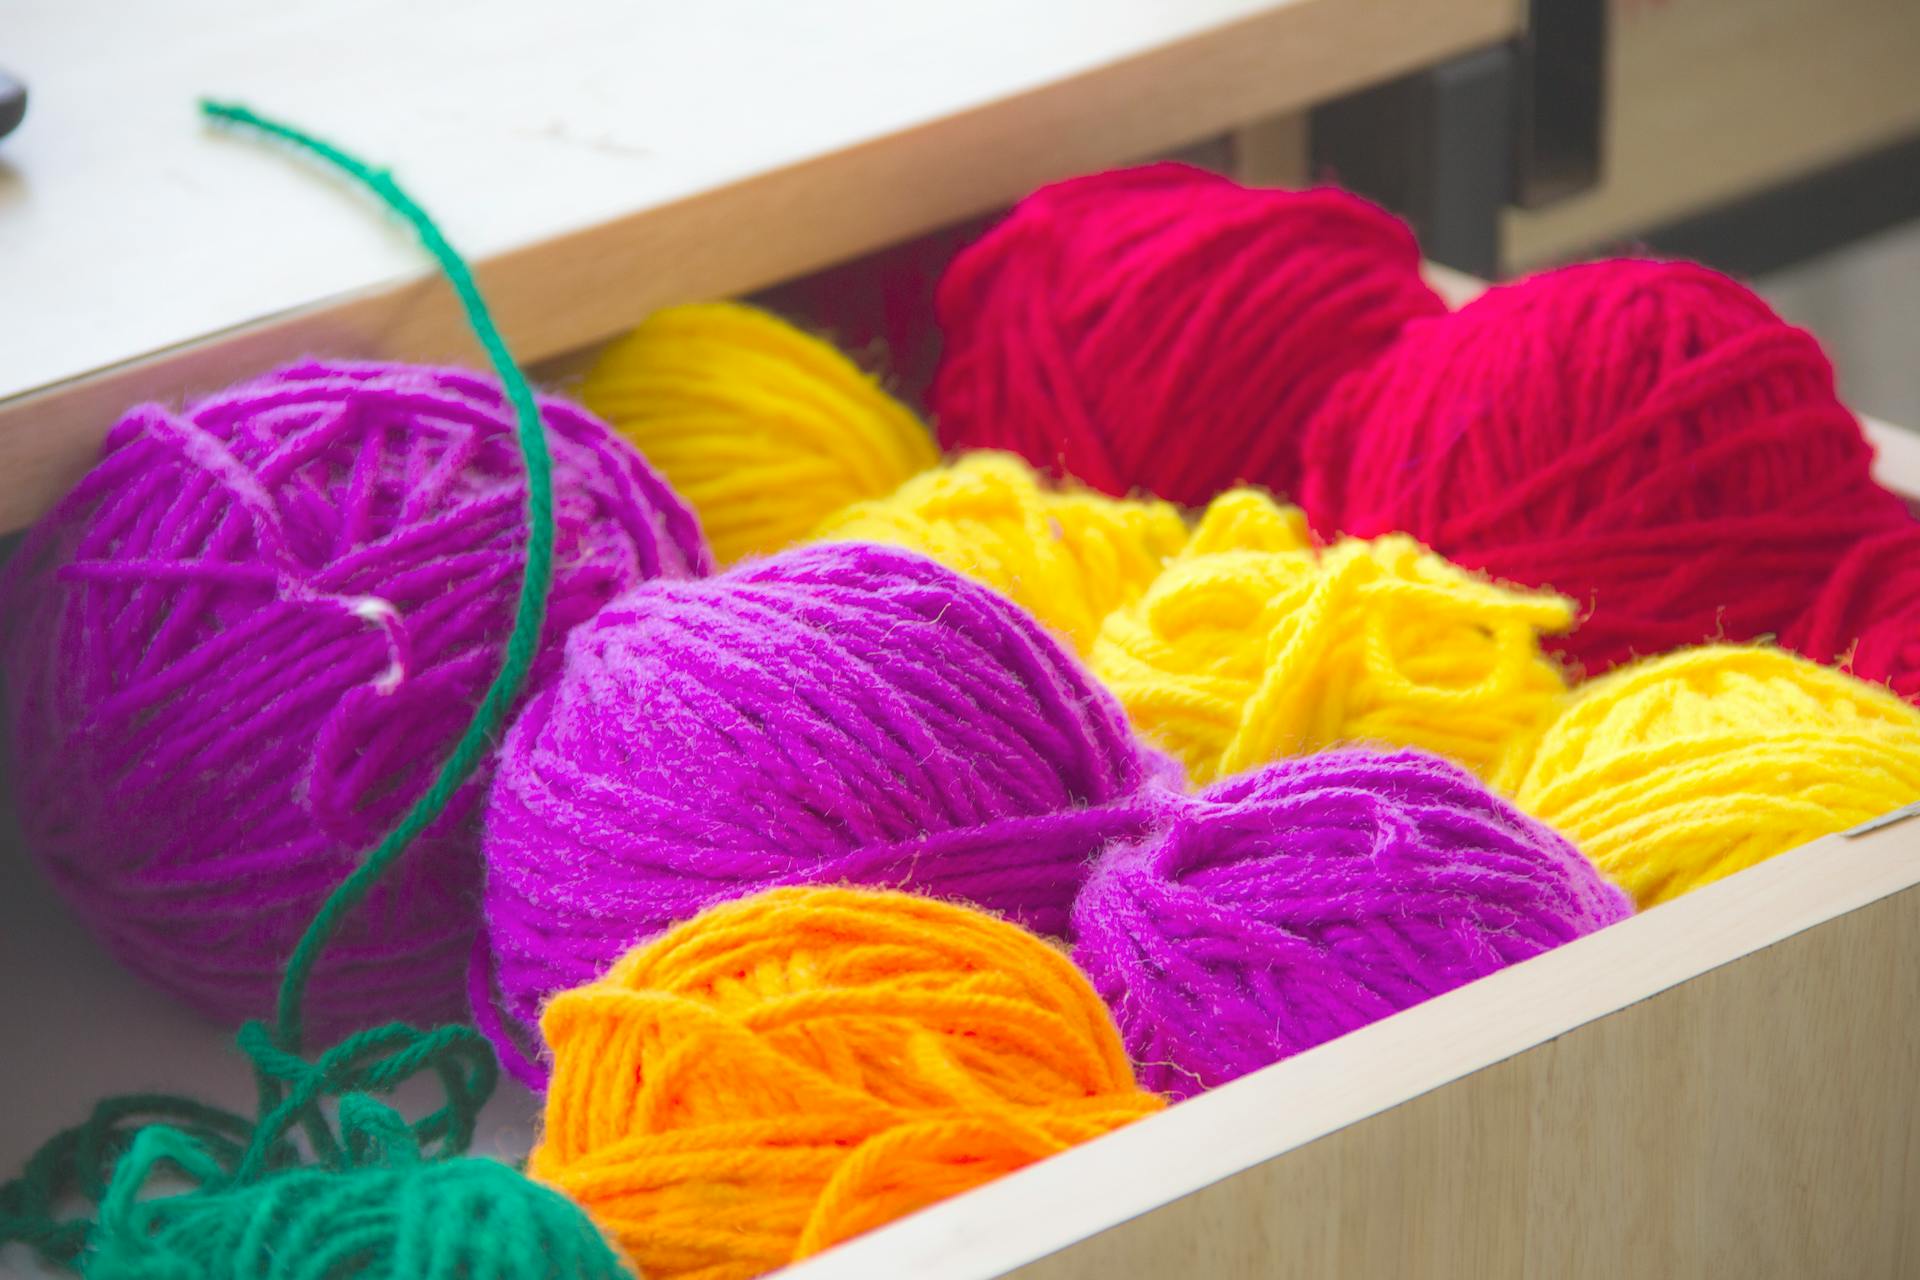 Des pelotes de fil colorées dans un tiroir | Source : Pexels